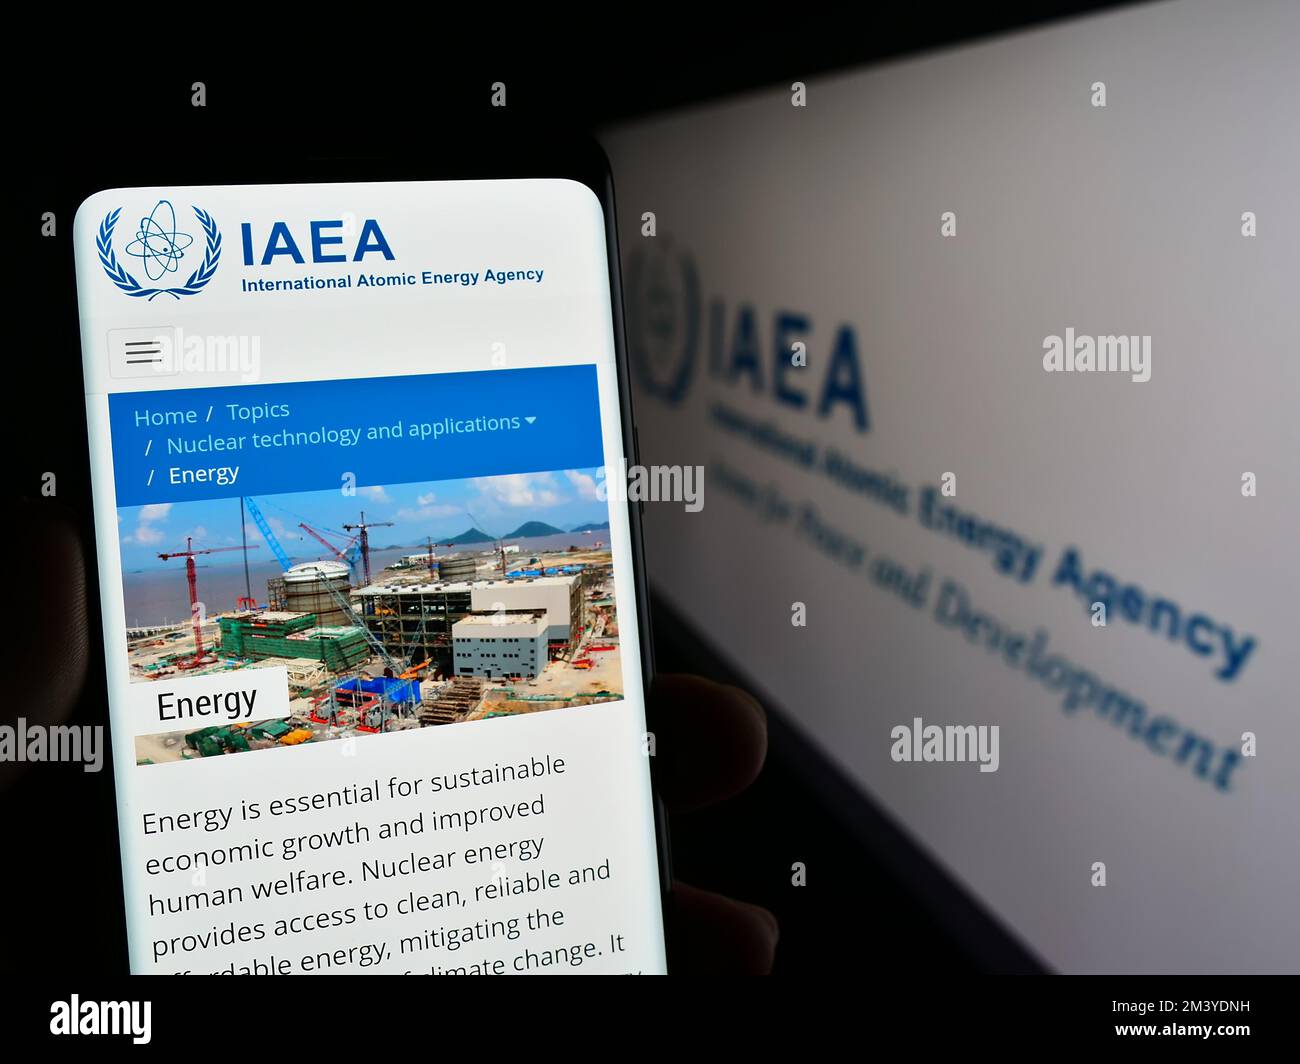 Persona che tiene il cellulare con la pagina web dell'Agenzia internazionale per l'energia atomica (AIEA) sullo schermo davanti al logo. Messa a fuoco al centro del display del telefono. Foto Stock